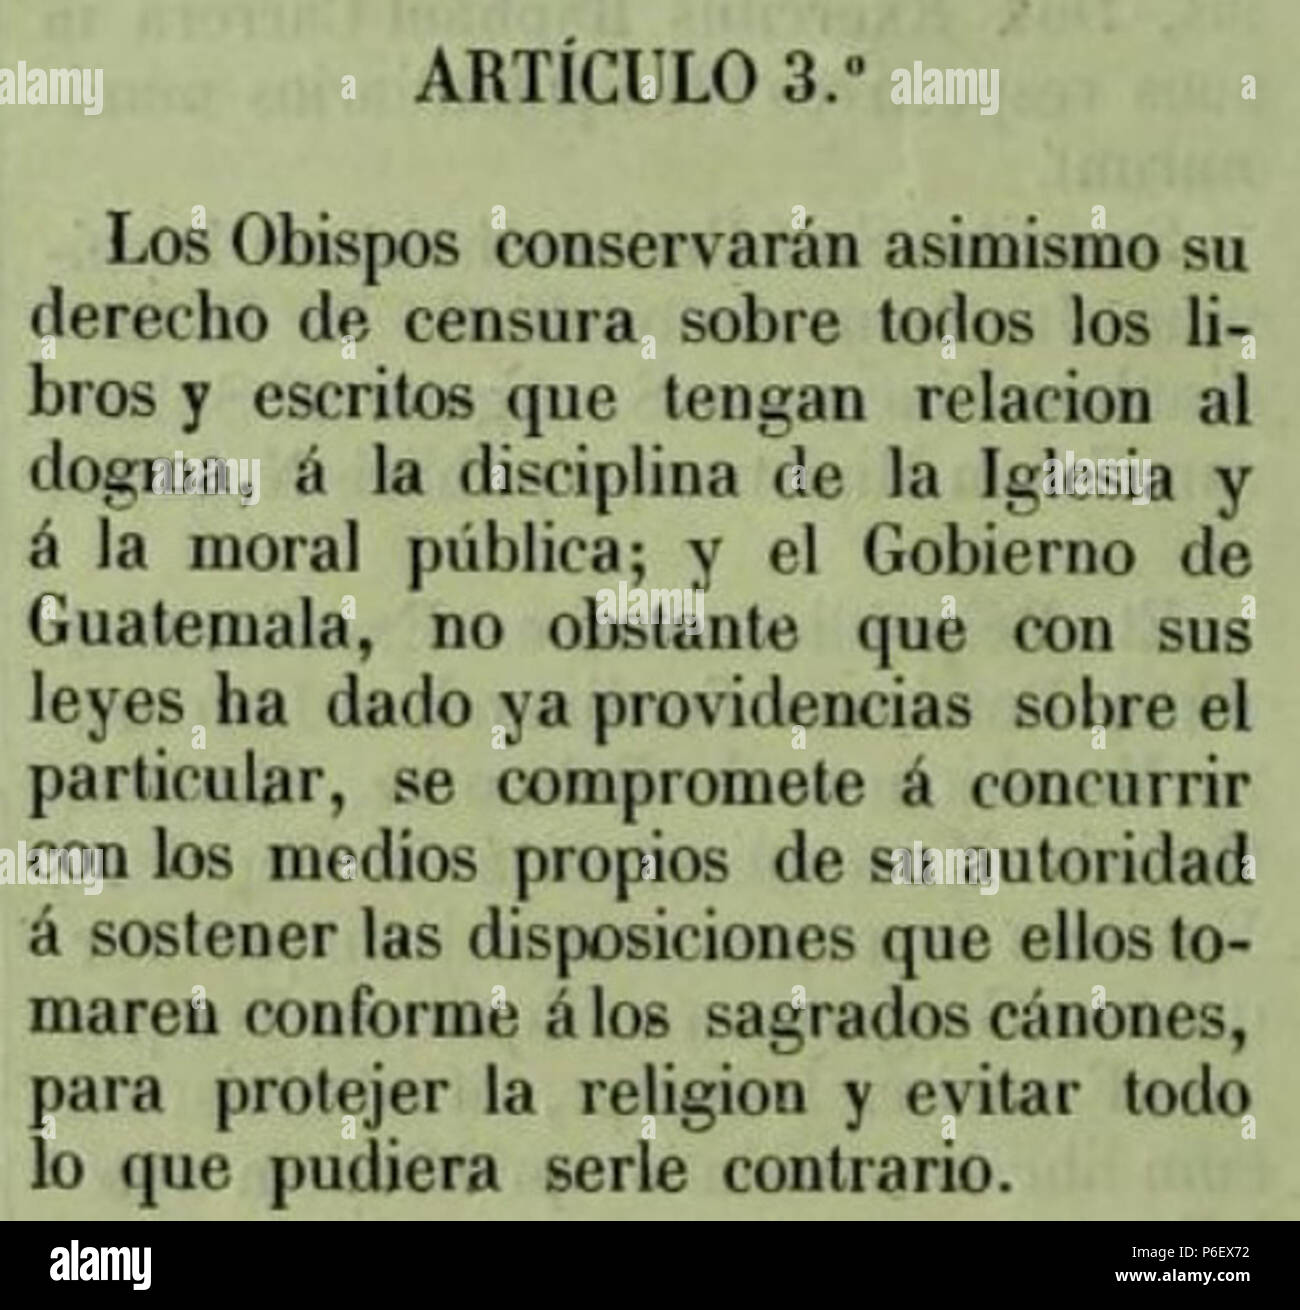 Español: Artículo 3 del Concordato entre Guatemala y la Santa Sede de 1854. 1854 11 Concordato3 Stock Photo